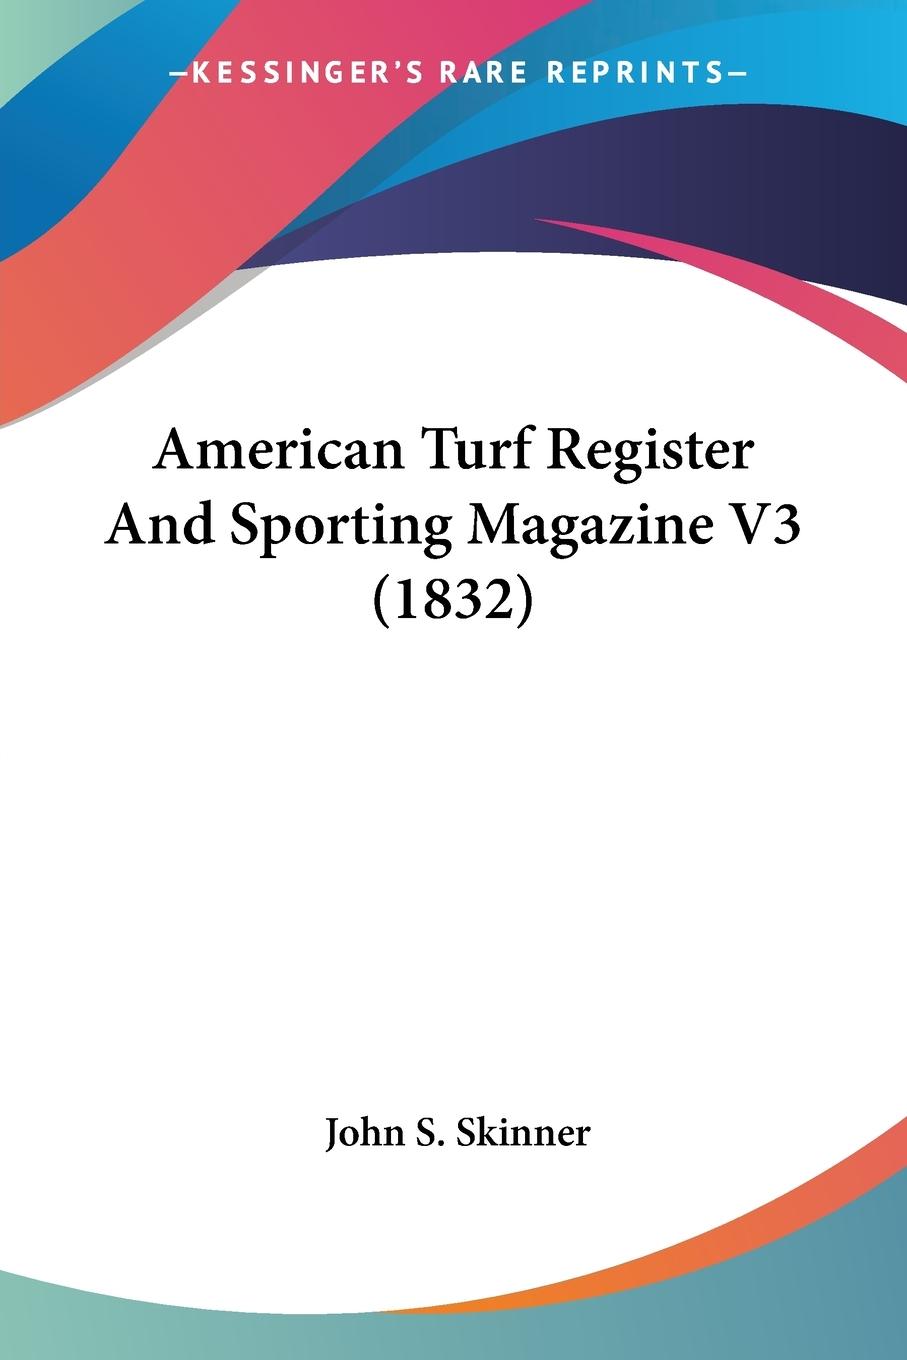 American Turf Register And Sporting Magazine V3 (1832) - Skinner, John S.